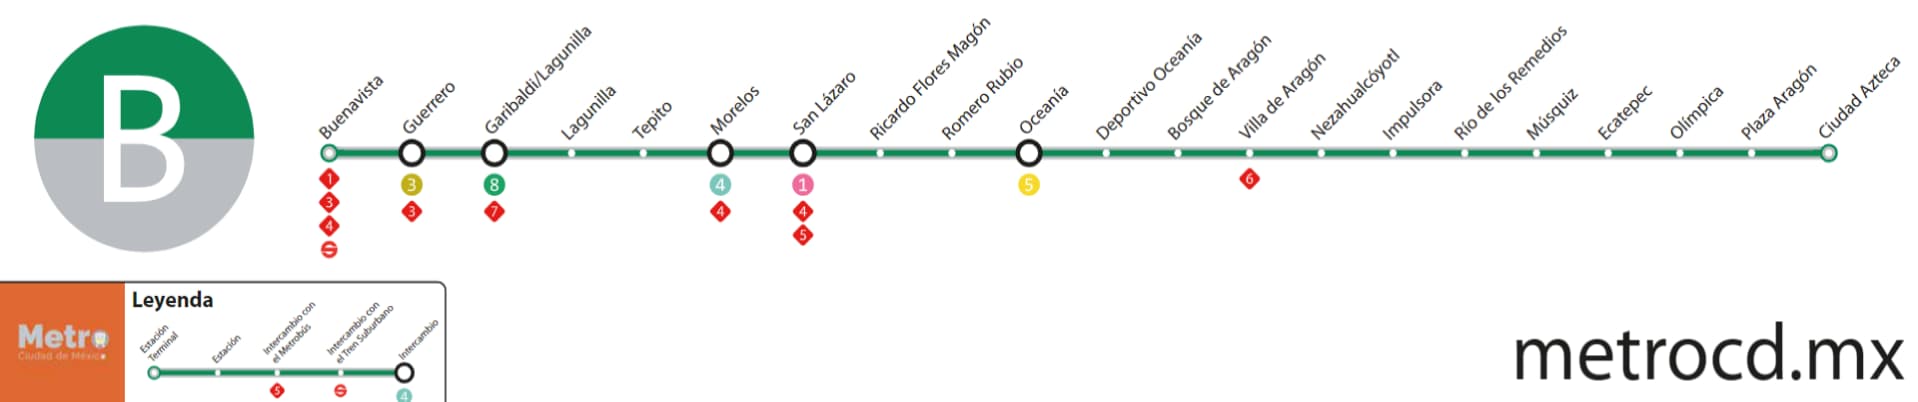 Mapa metro línea B - Metro CDMX Descarga plano